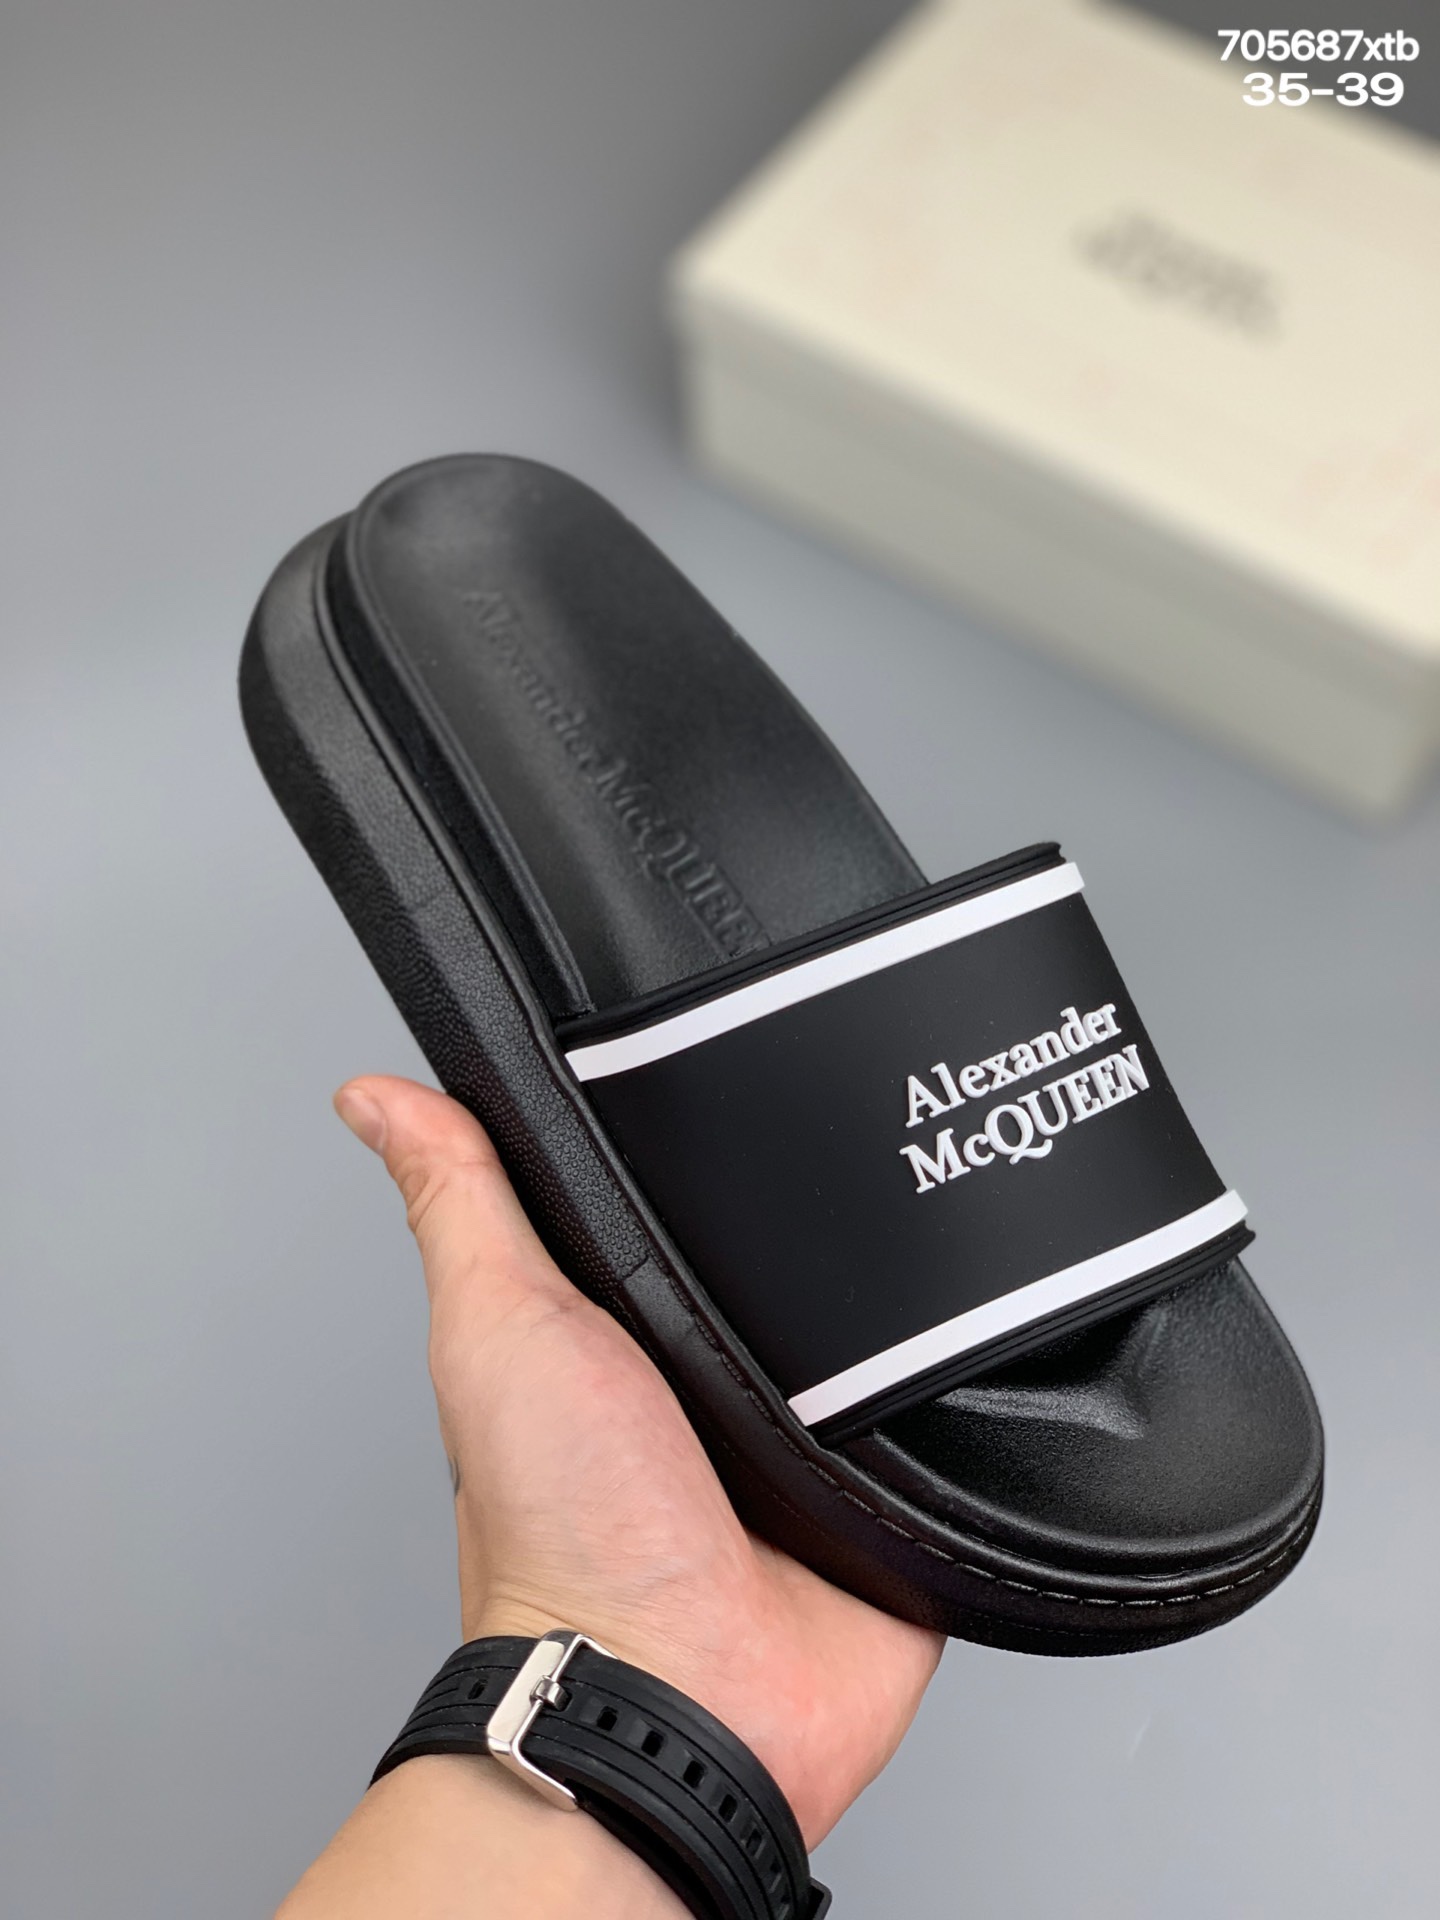  
【Alexander mcqueen 】。麦昆拖鞋系列：高端品牌 3D制面，xt升级版大底，更轻便，防滑。市场顶级品质，潮人必备，夏季拖鞋的季节来了，穿起来超级唯美. 尺码：35一39 编码：705687xtb